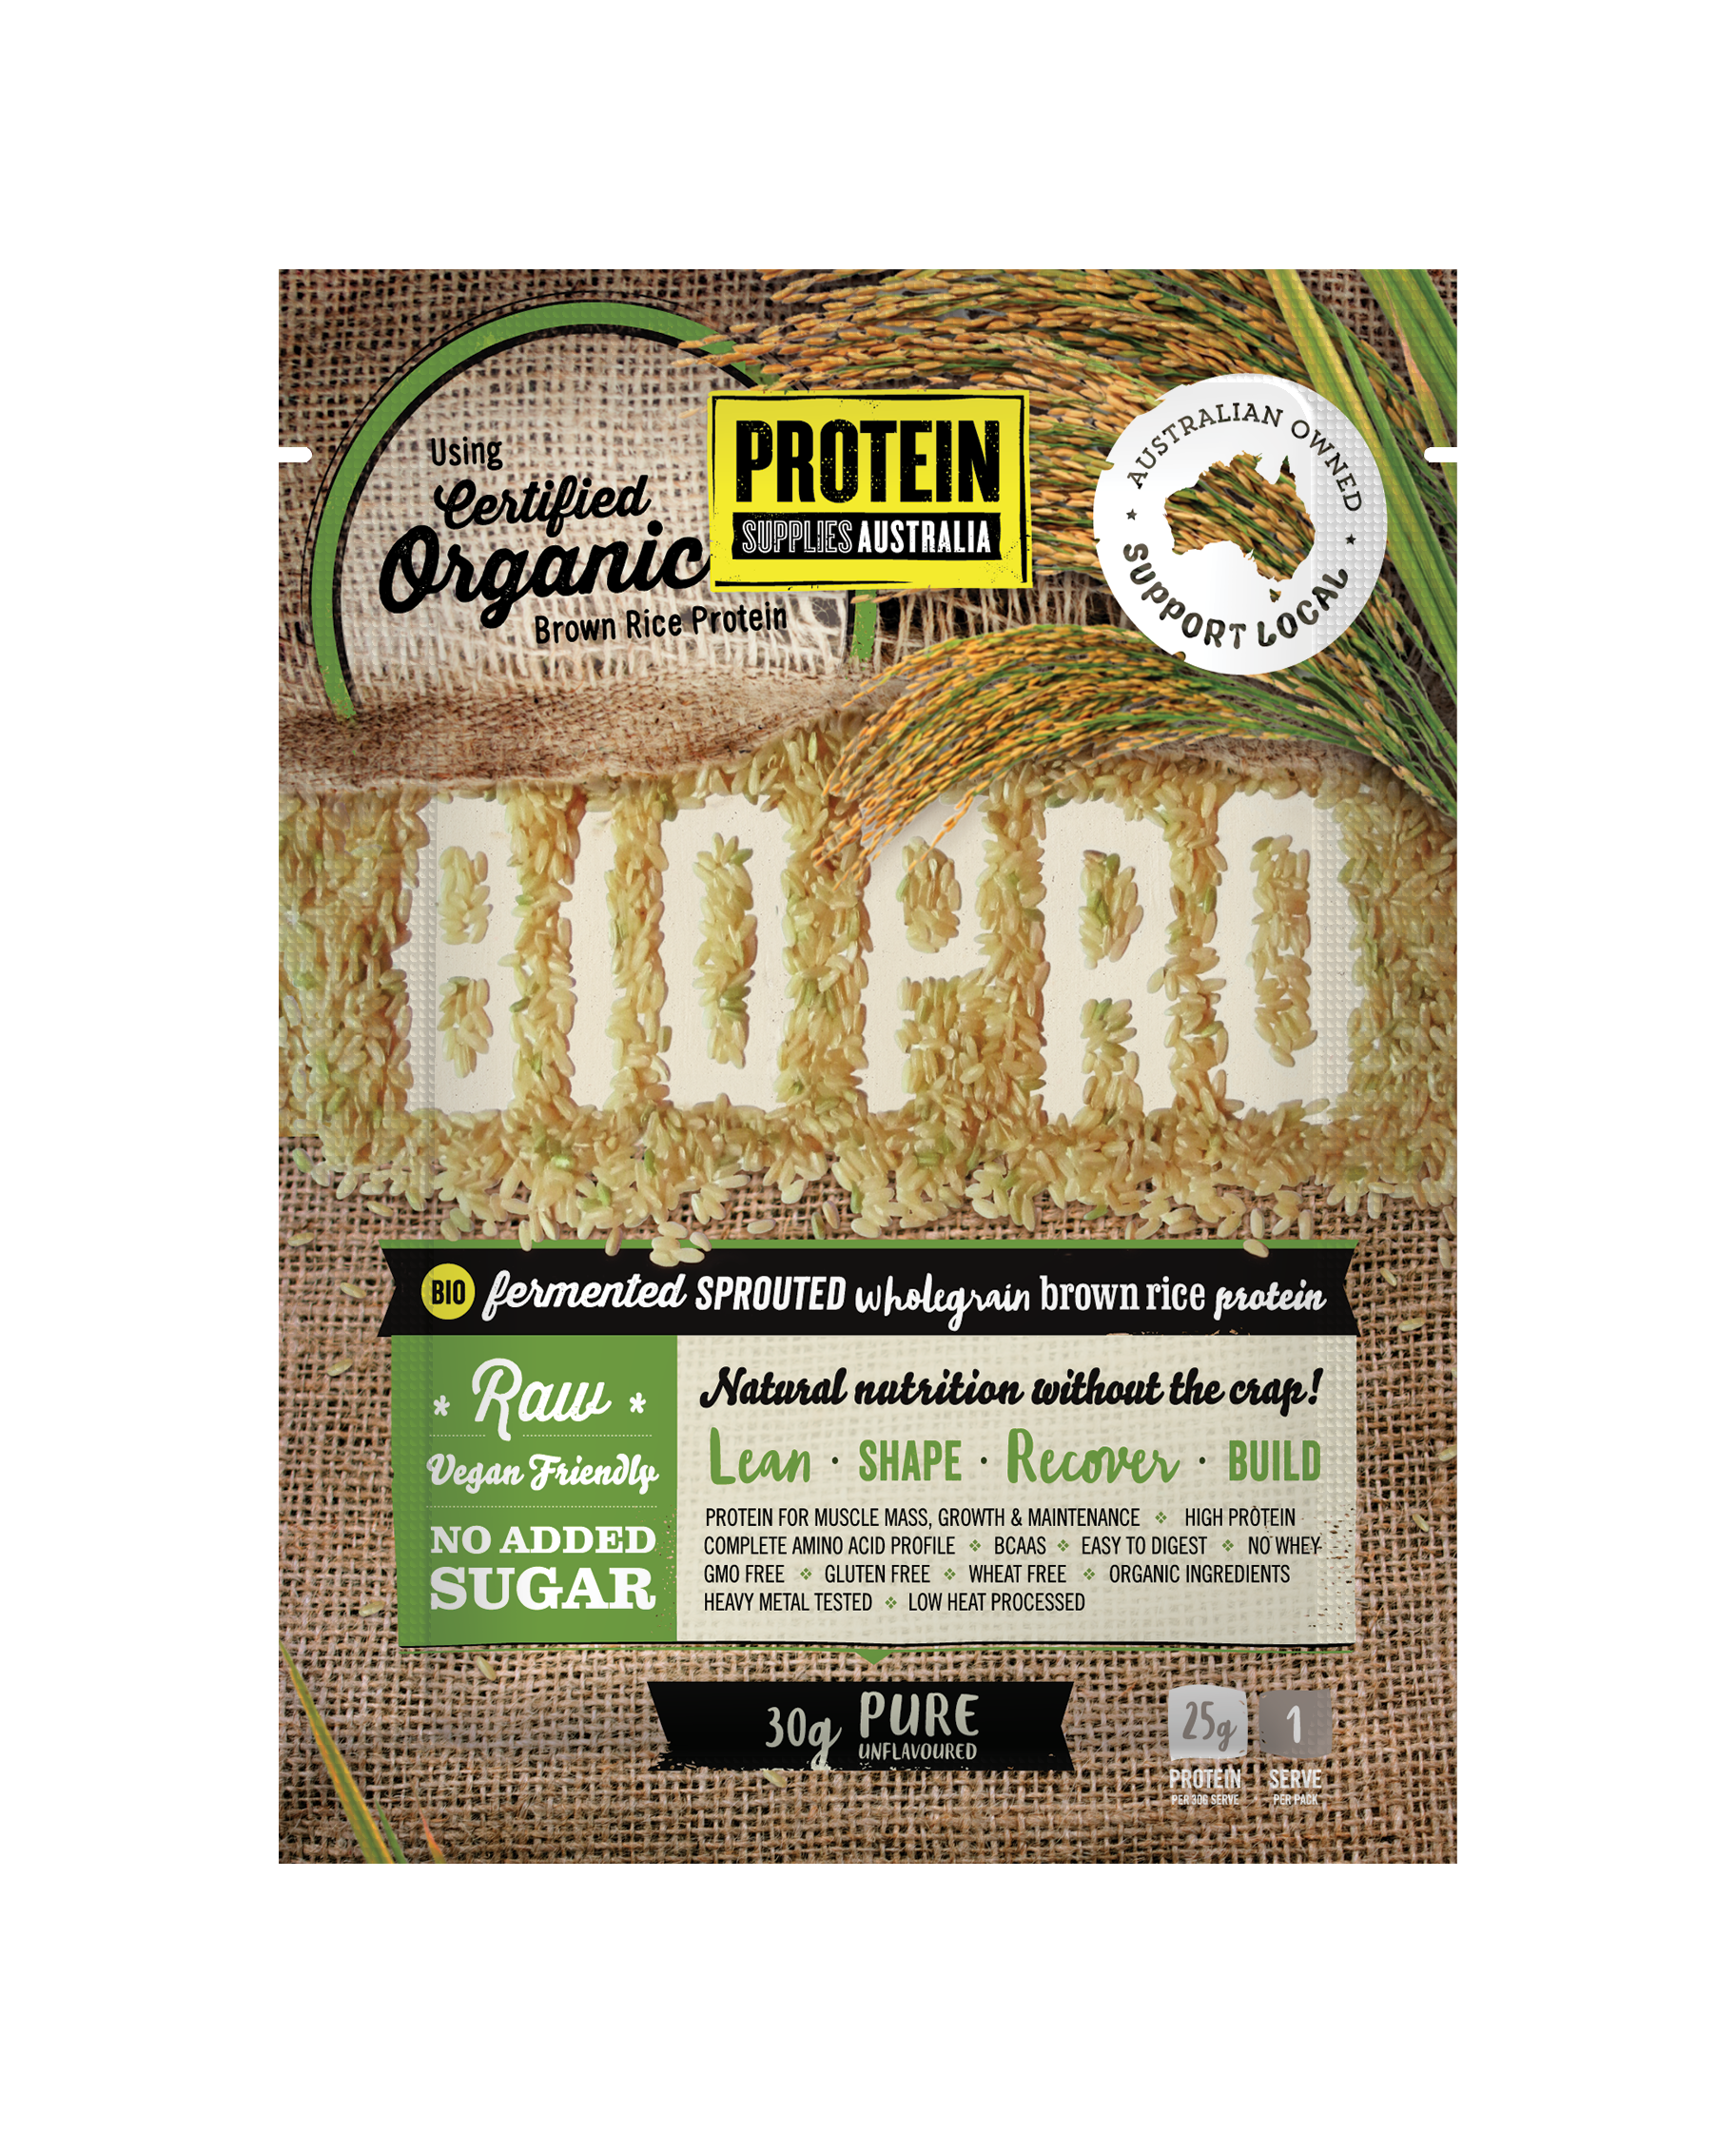 Bio Pro Pure - Protein Supplies Australia